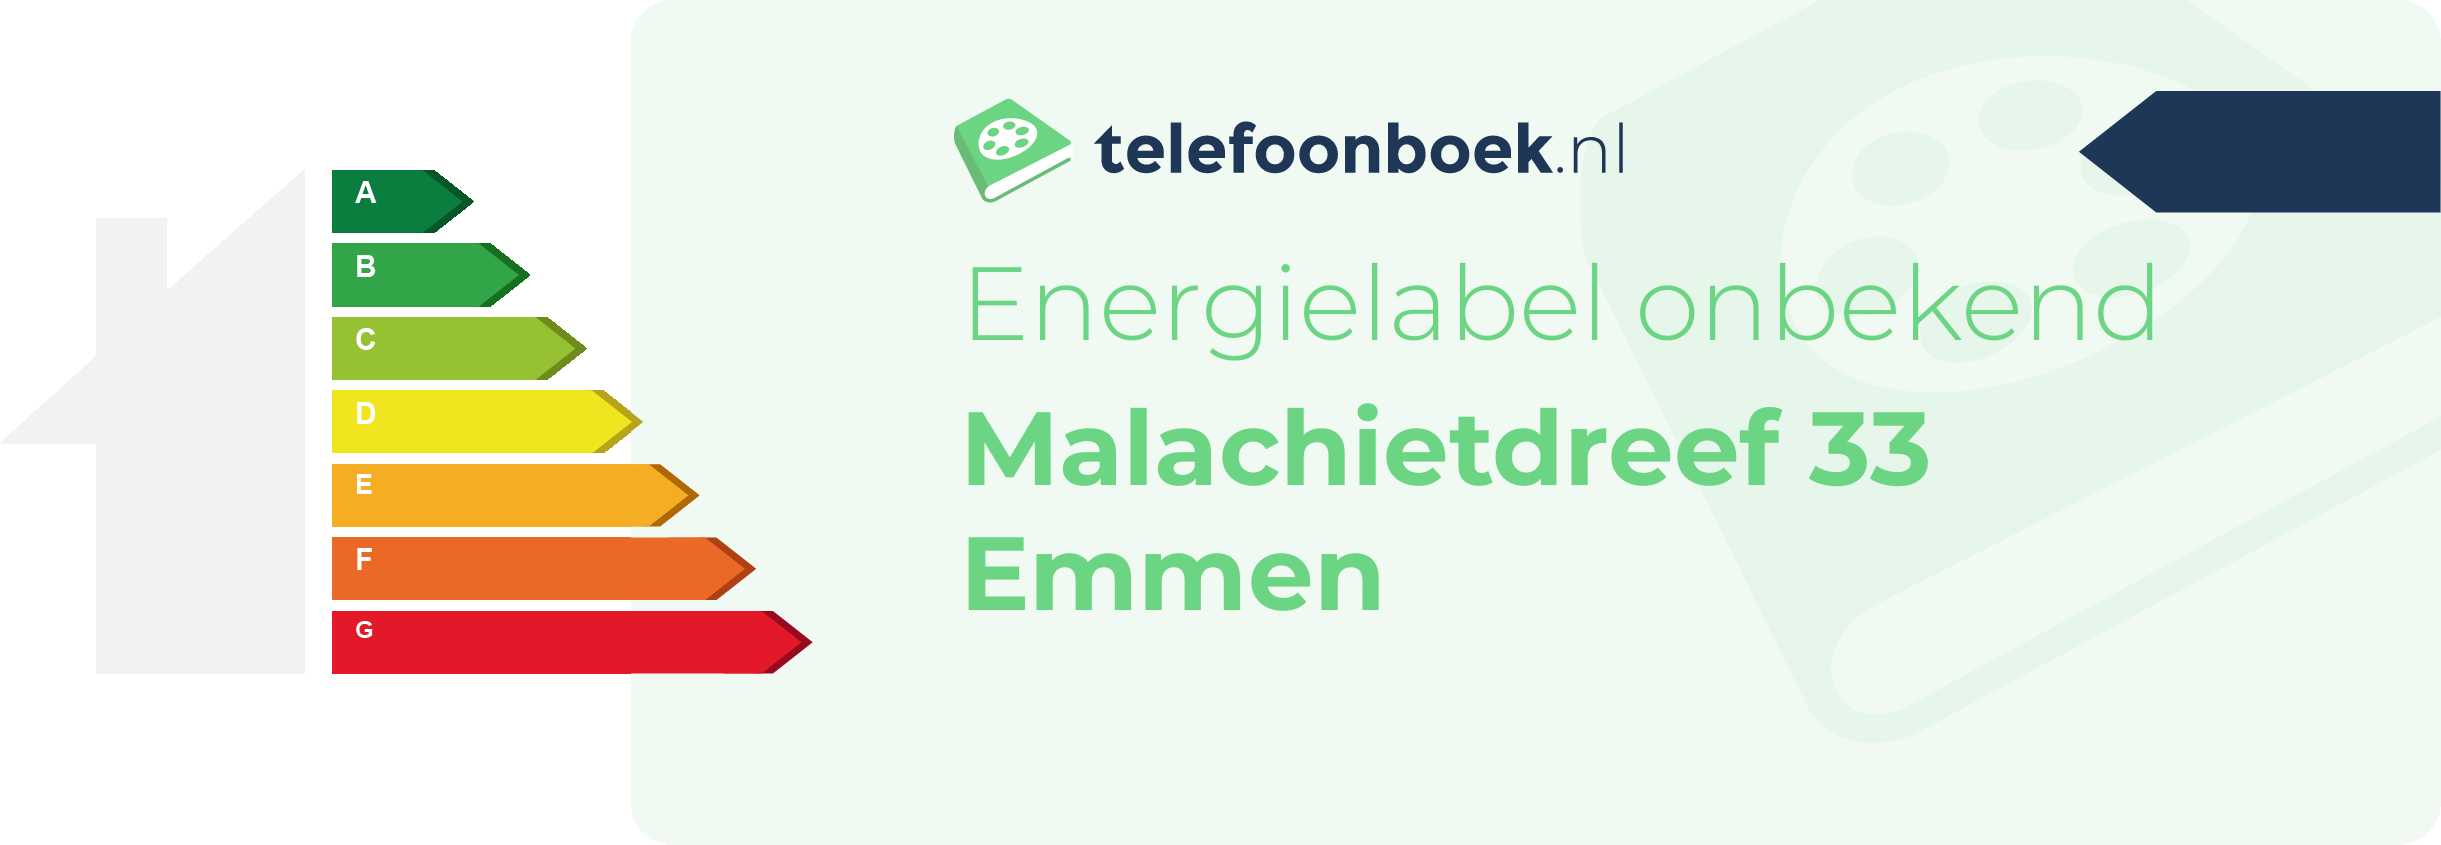 Energielabel Malachietdreef 33 Emmen